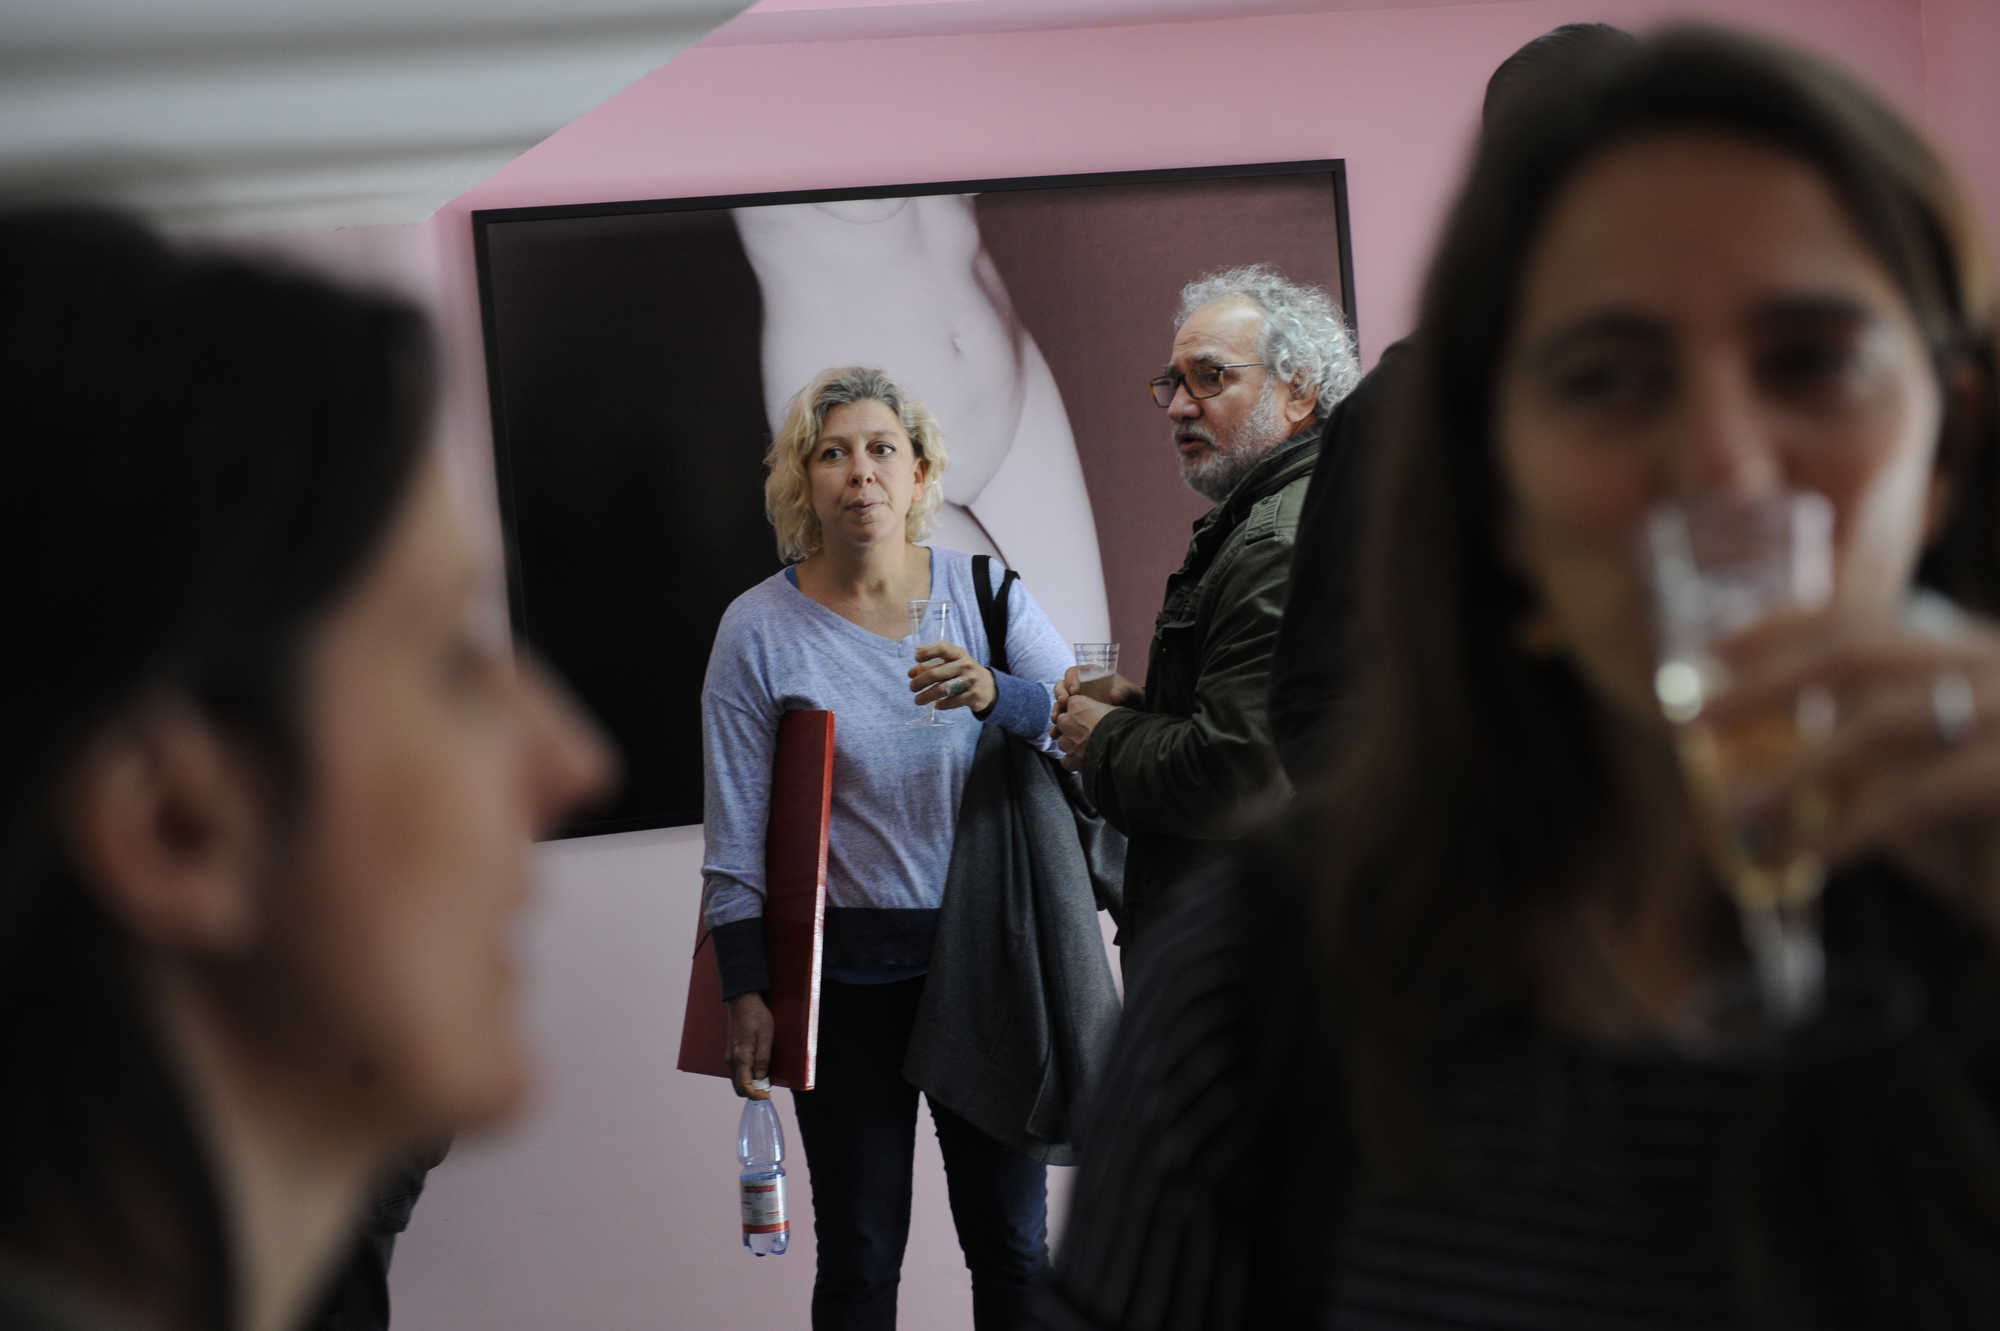 Inauguración de la expo de Vicente González Mimisa en el marco de la 7ª edición del Festival Internacional de Fotografía en Valparaíso, FIFV 2016. ©Victor Ruiz Caballero